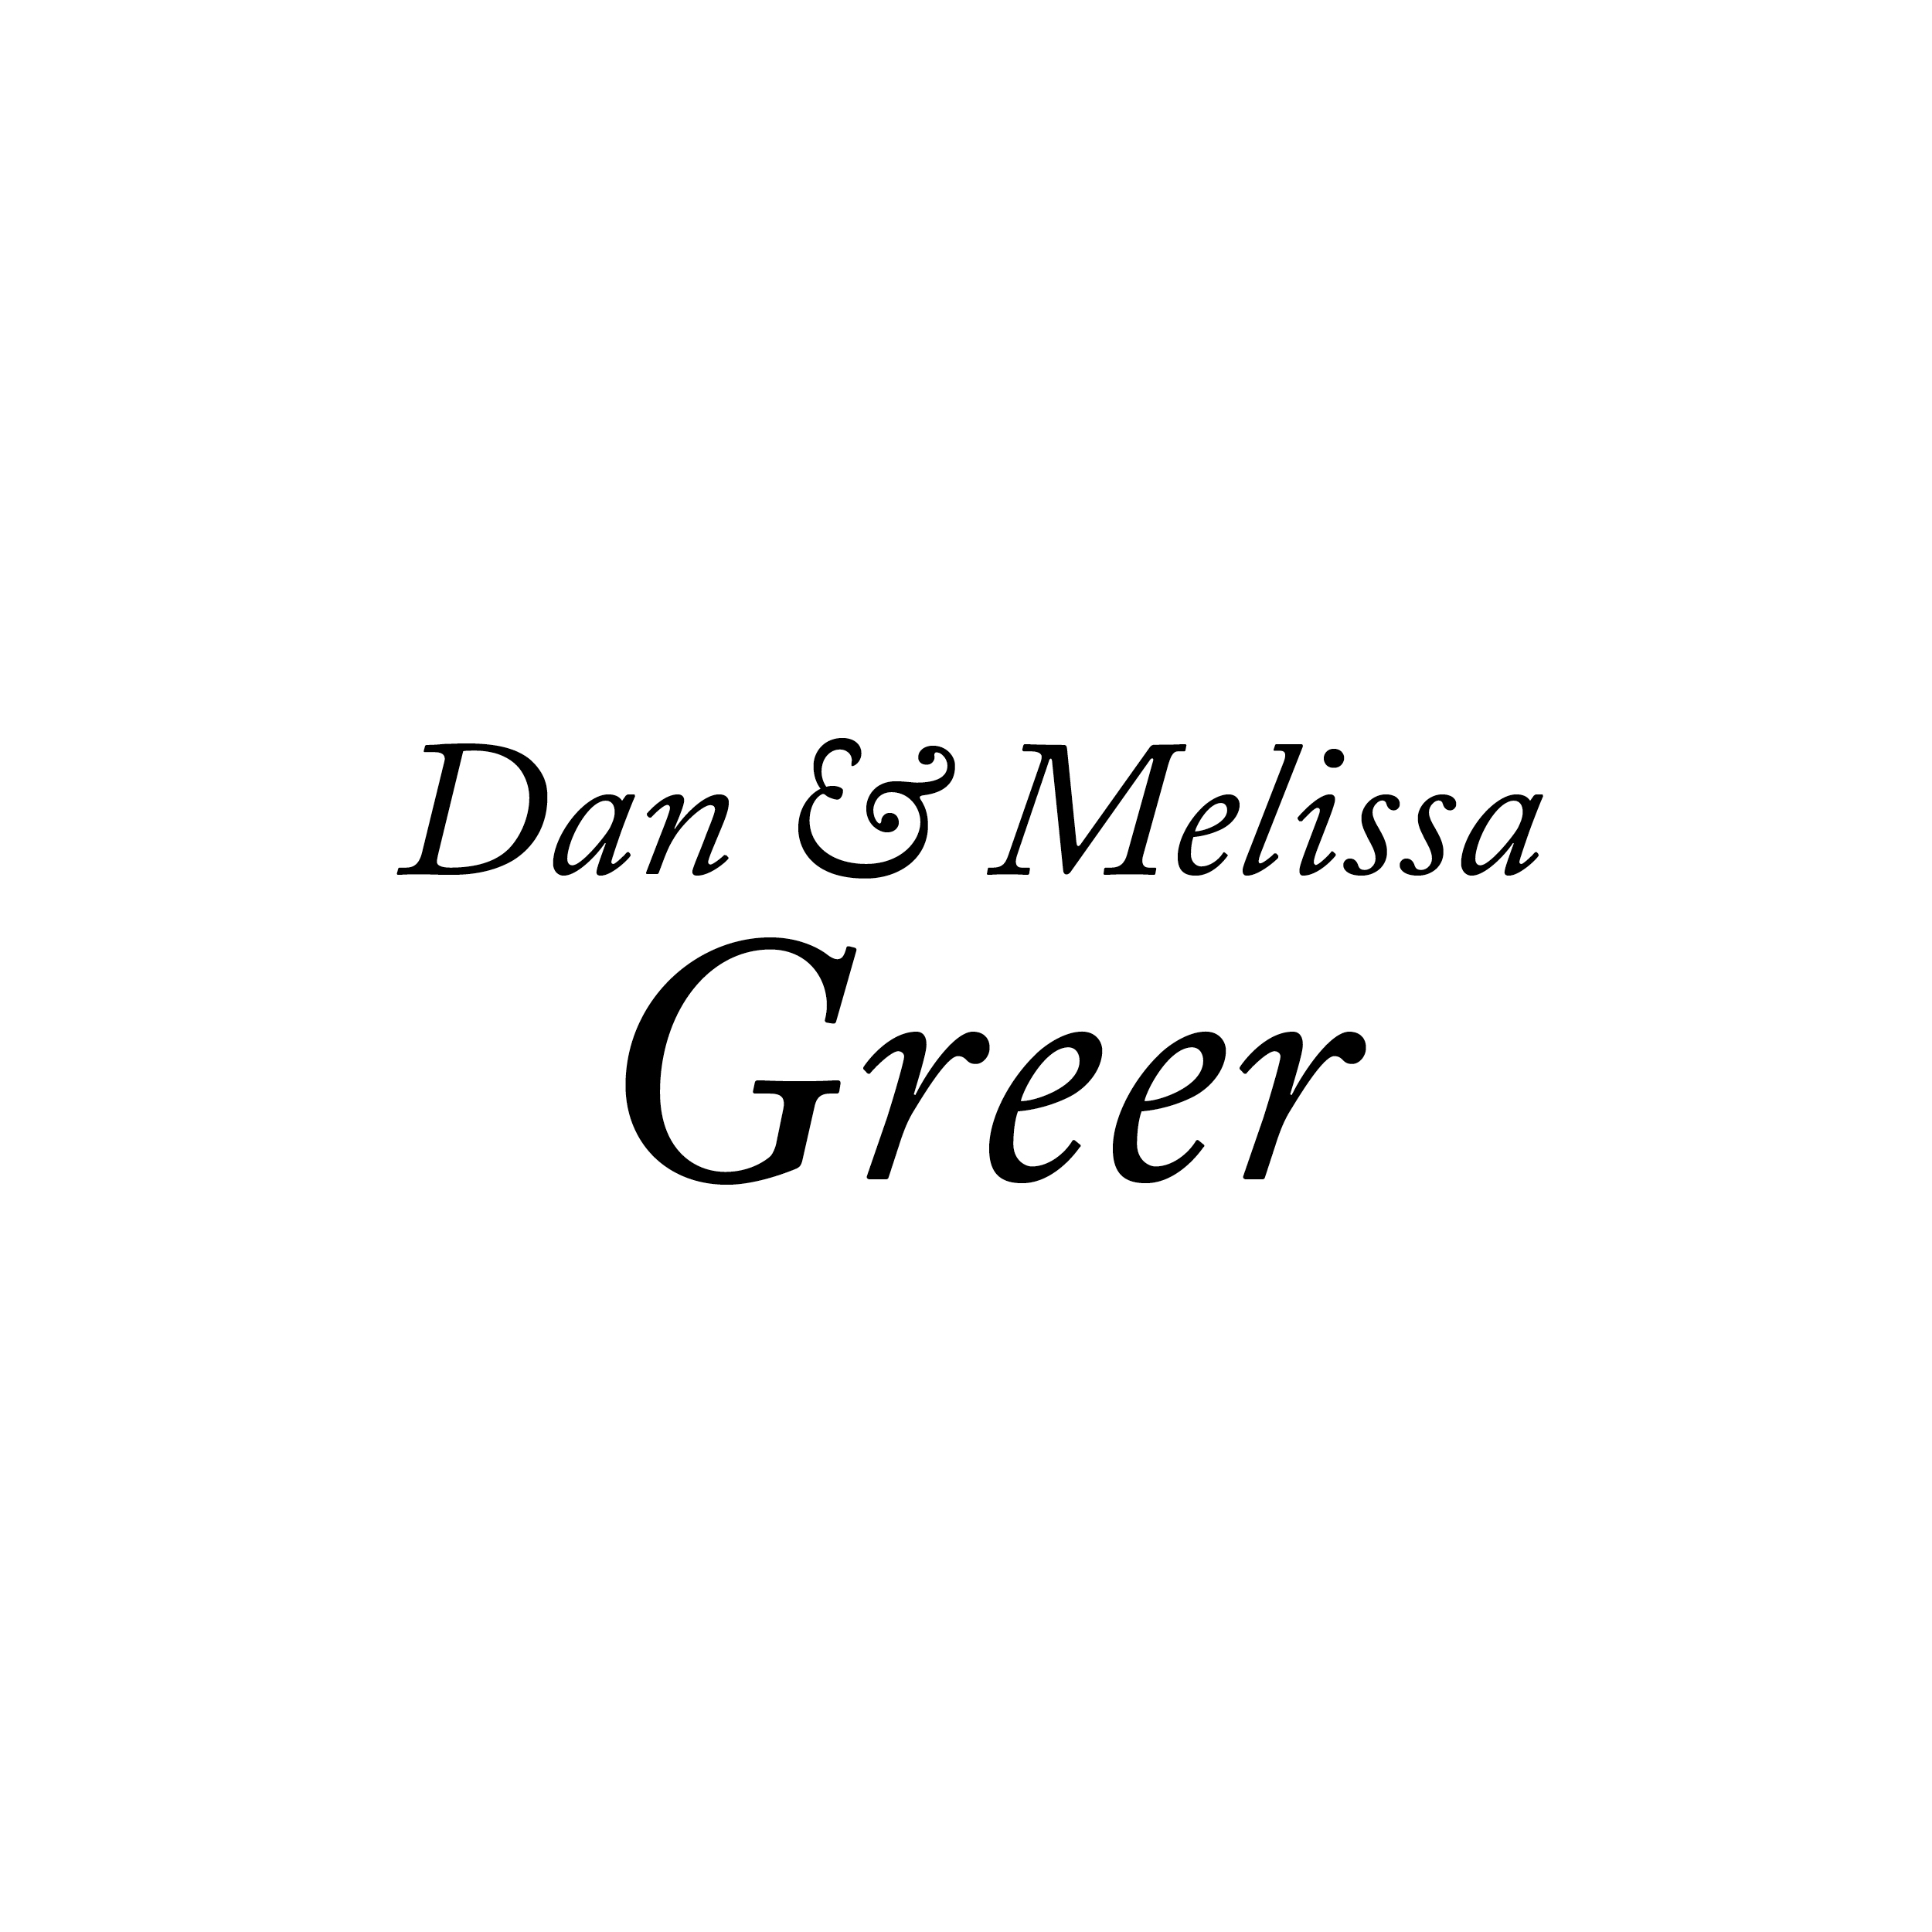 Dan and Melissa Greer